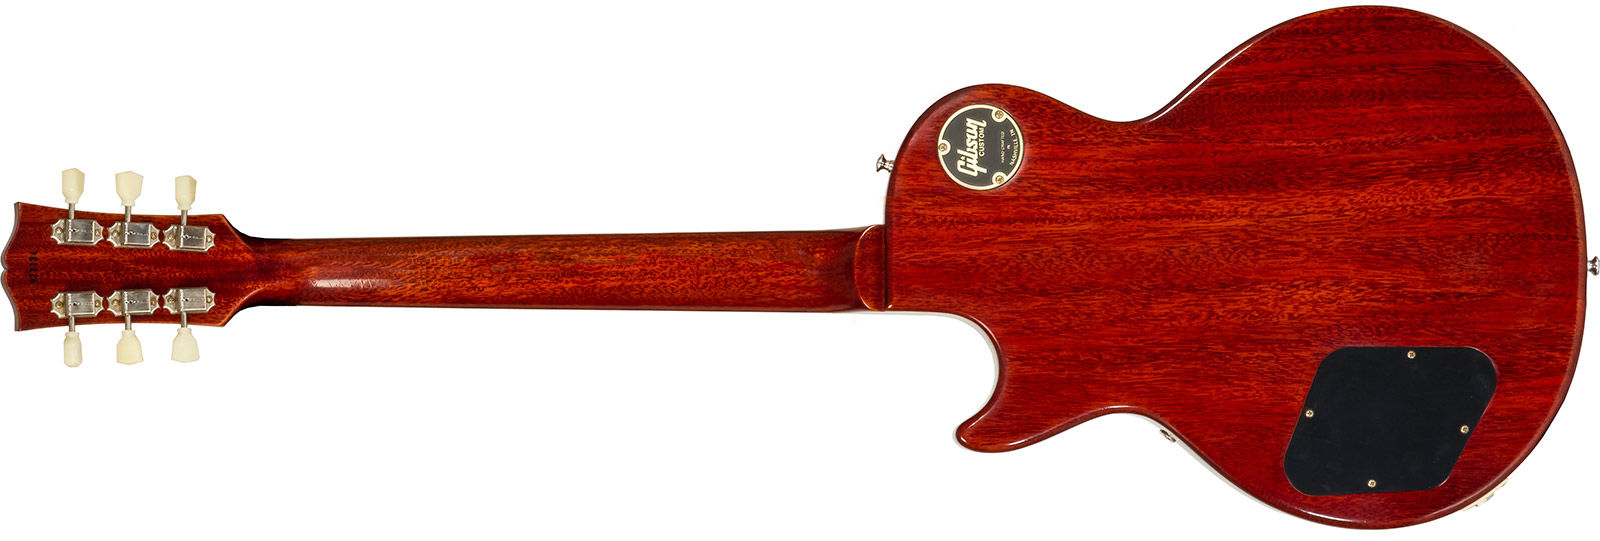 Gibson Custom Shop M2m Les Paul Standard 1959 Reissue 2h Ht Rw #932134 - Murphy Lab Ultra Light Aged Washed Cherry Burst - Enkel gesneden elektrische 